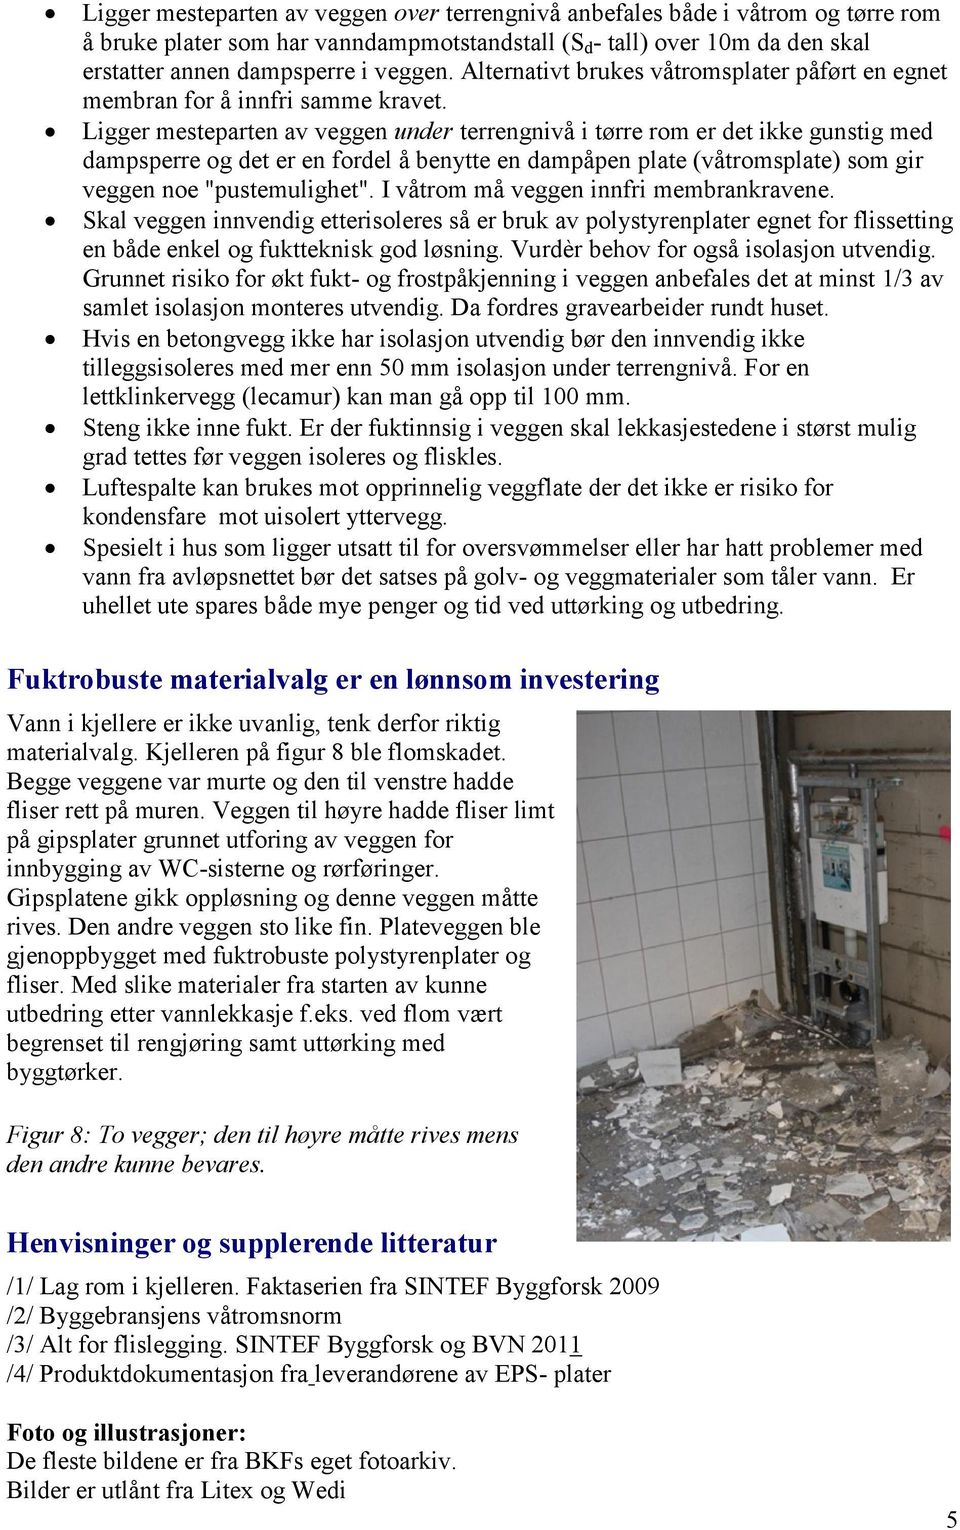 Figur 1: Kledning av kjellere og underetasjer med vannbestandige plater og  fliser gir fuktrobuste vegger. - PDF Gratis nedlasting